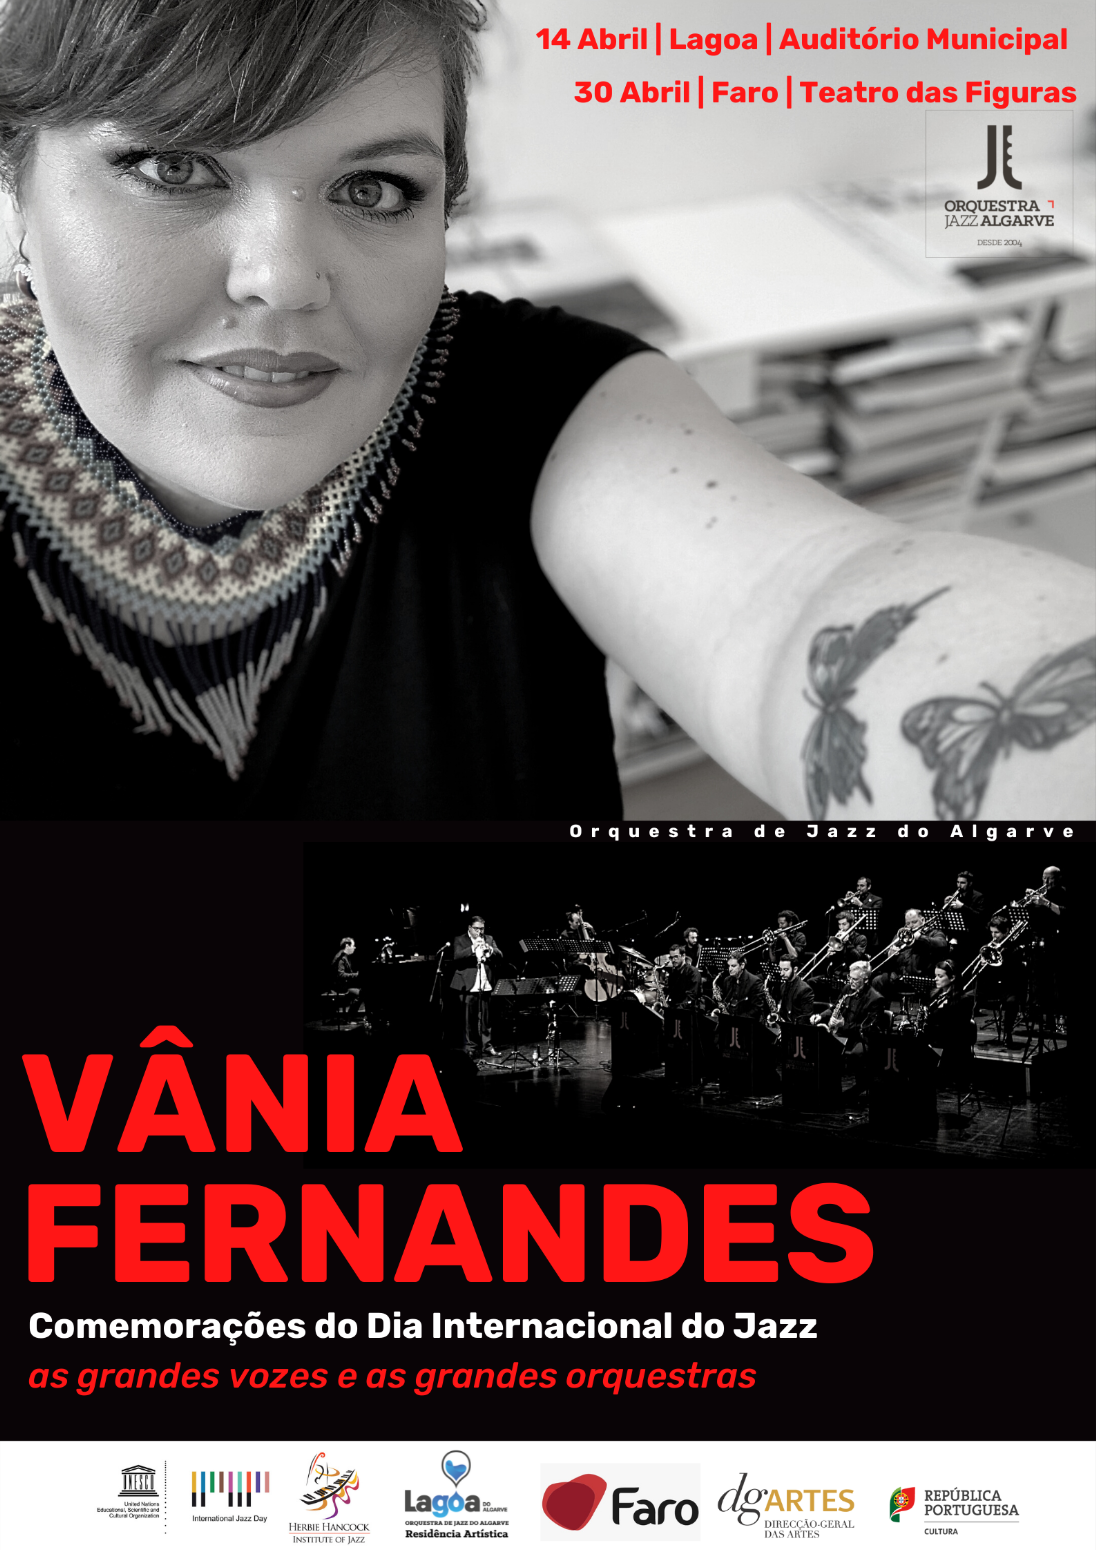 Vânia Fernandes e a Orquestra de Jazz do Algarve